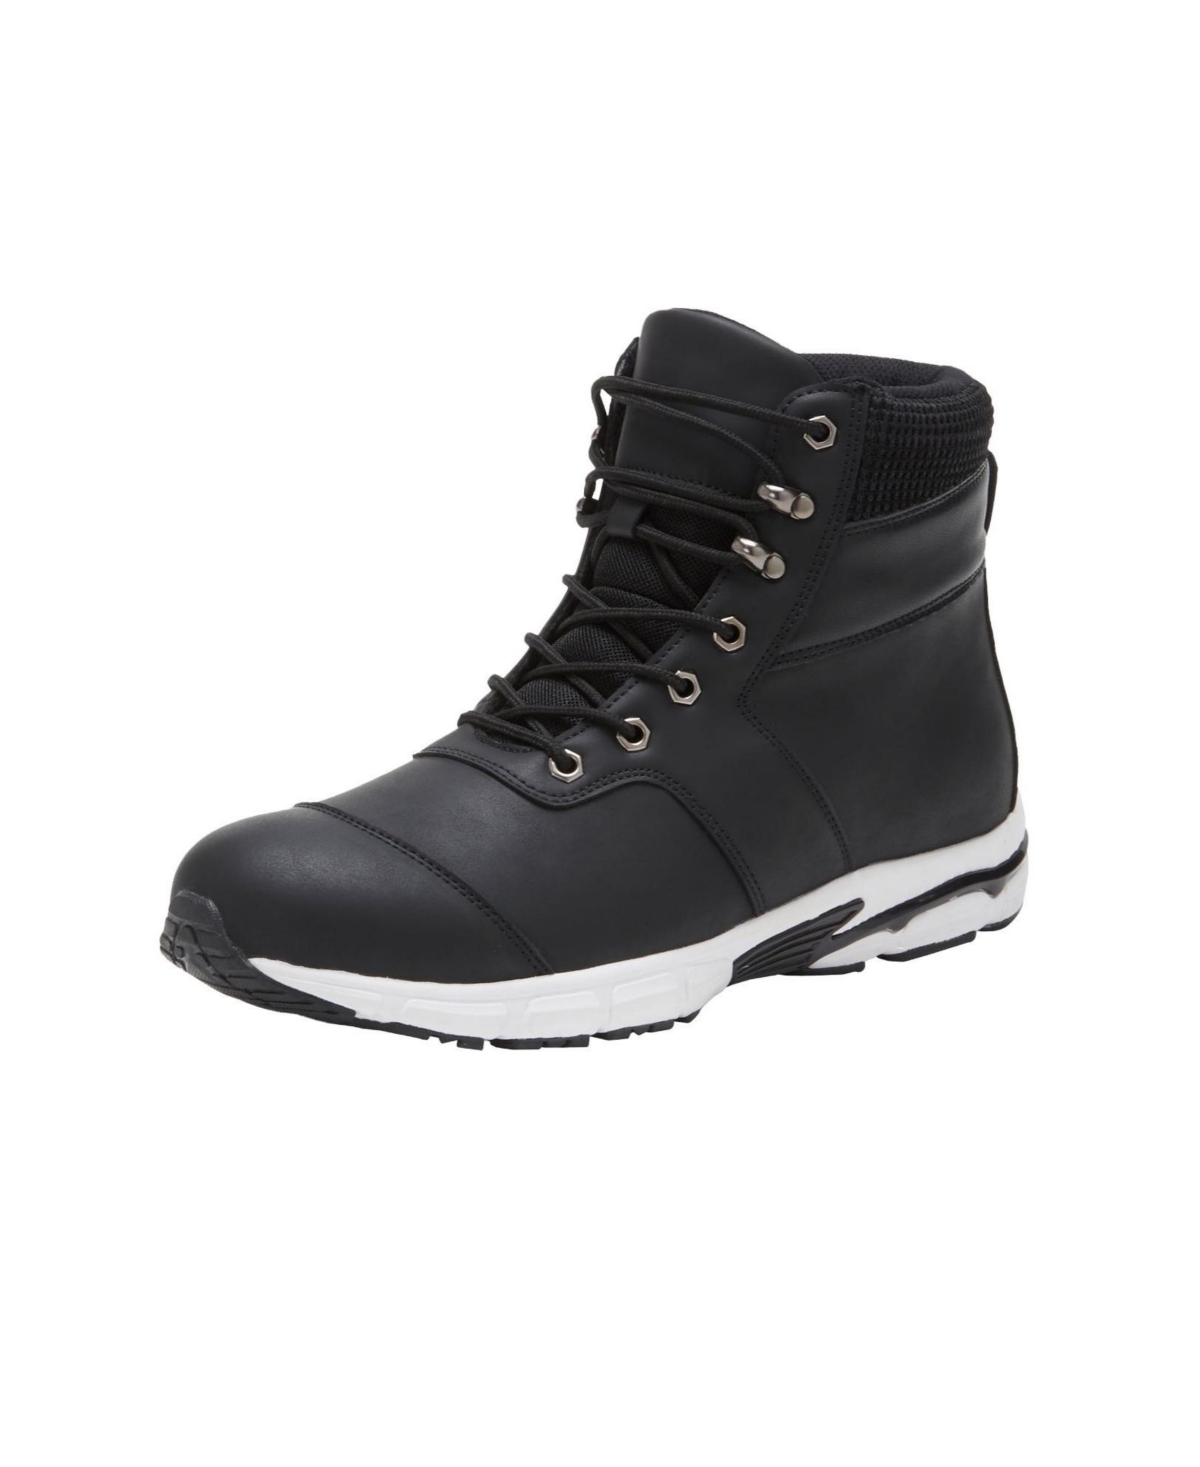 Men's Sneaker Boots - Black